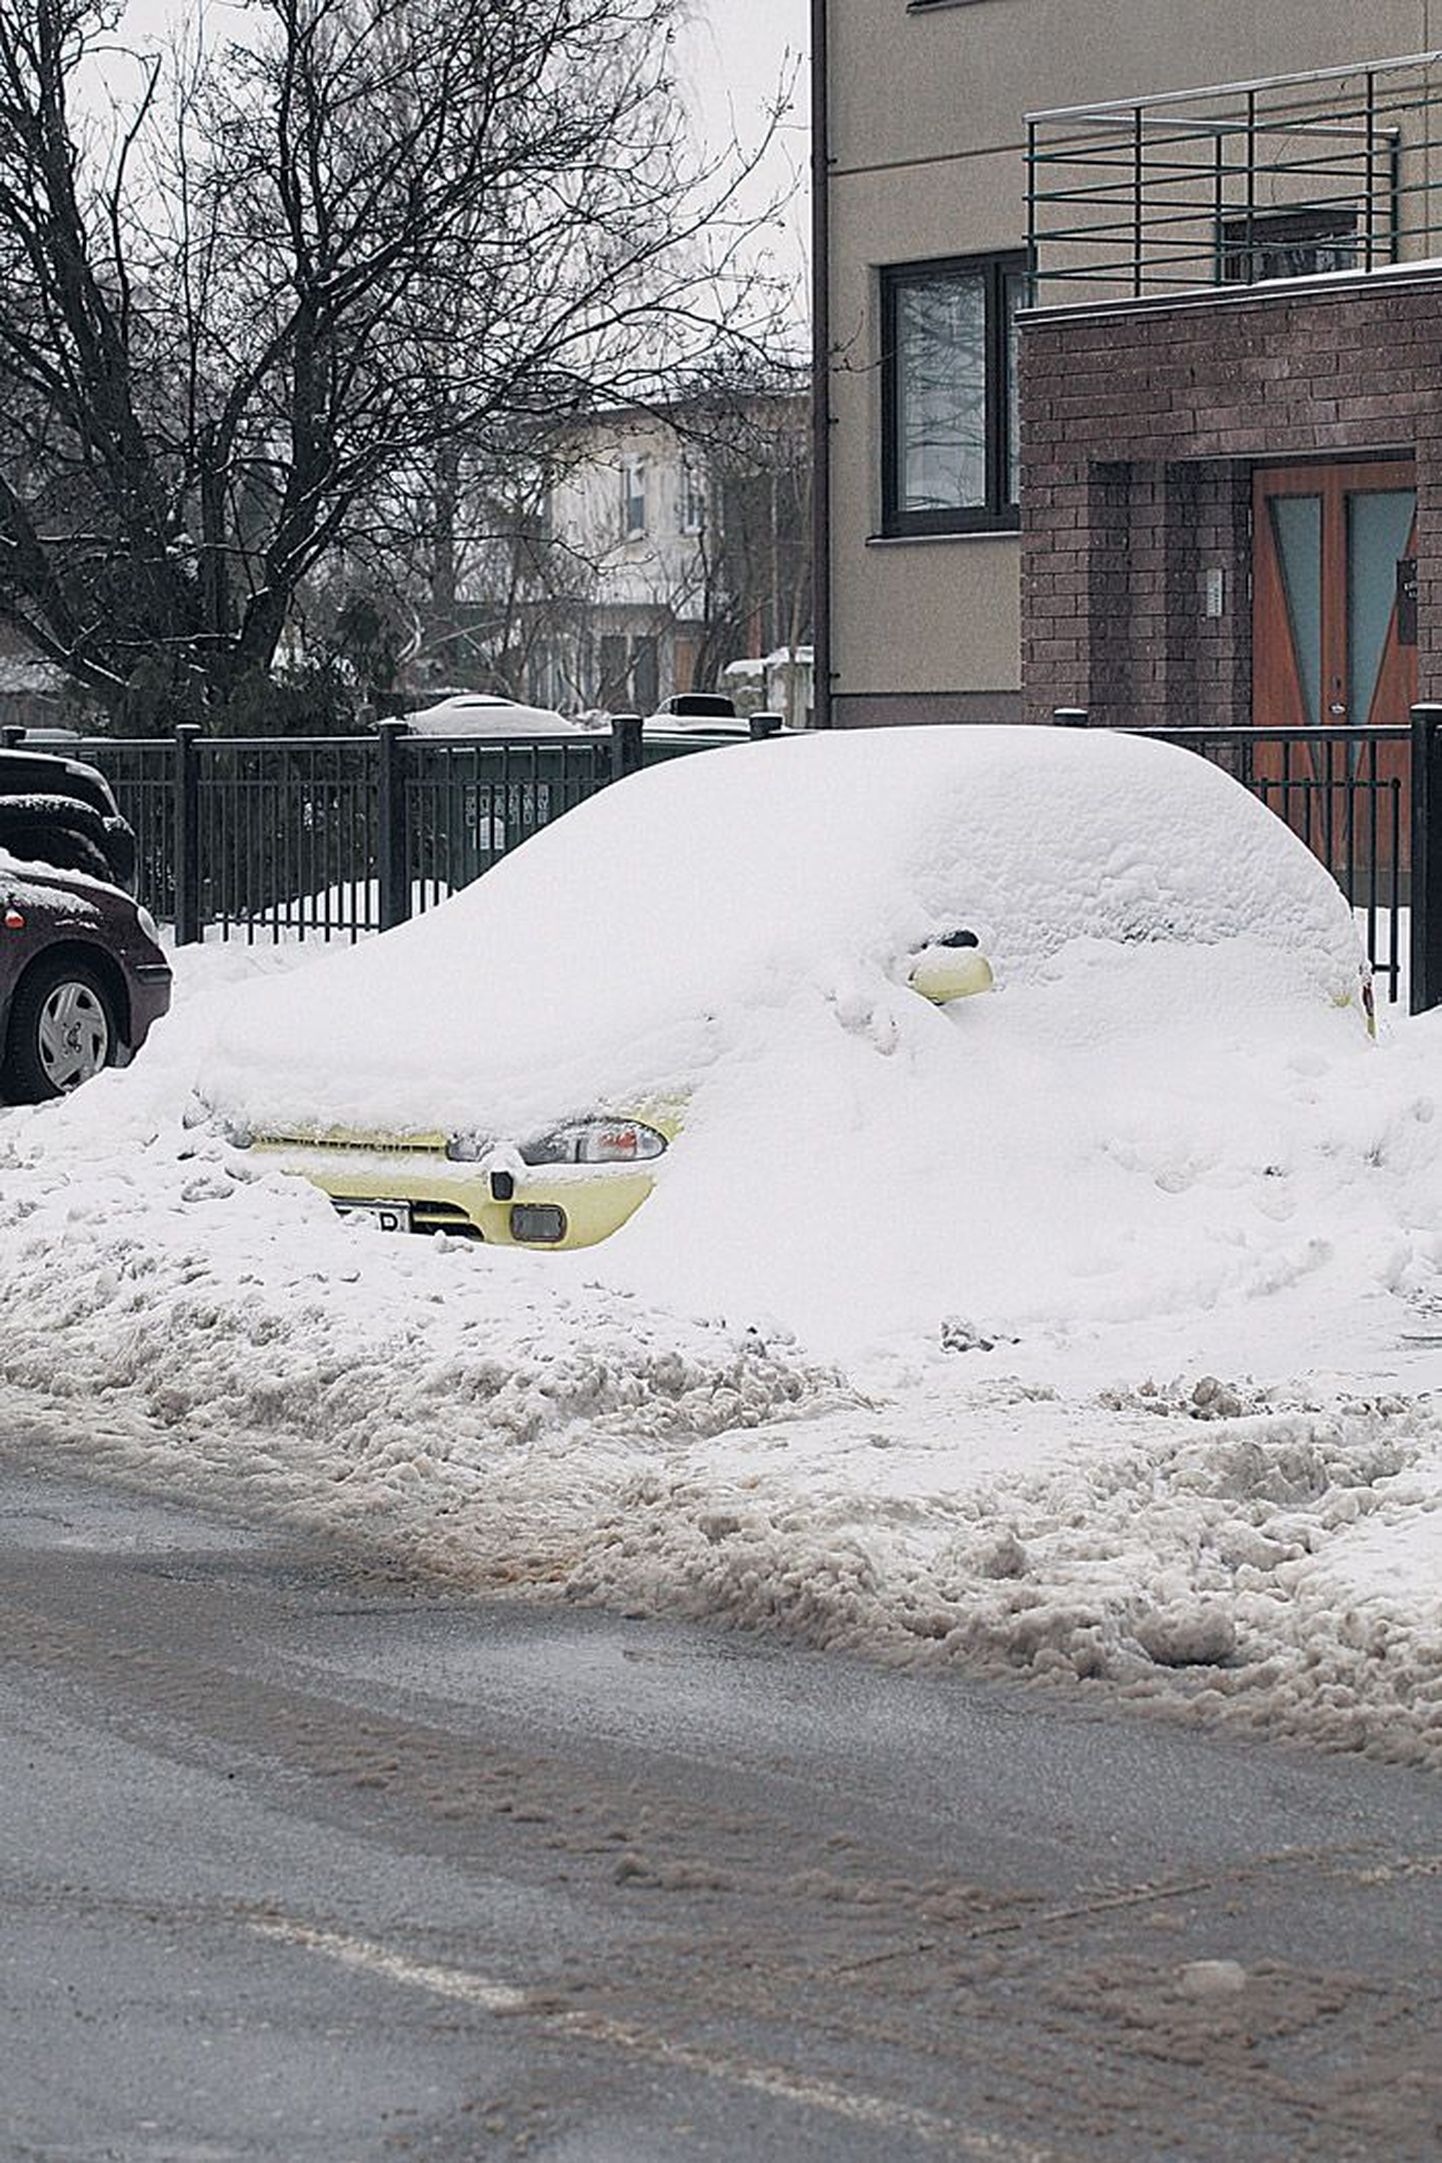 Raua 13 maja ette pargitud auto on jäänud lumevangi: lumevalli taga seisva sõiduki kättesaamiseks tuleb kas oodata suurt sula või teha kõvasti labidatööd.